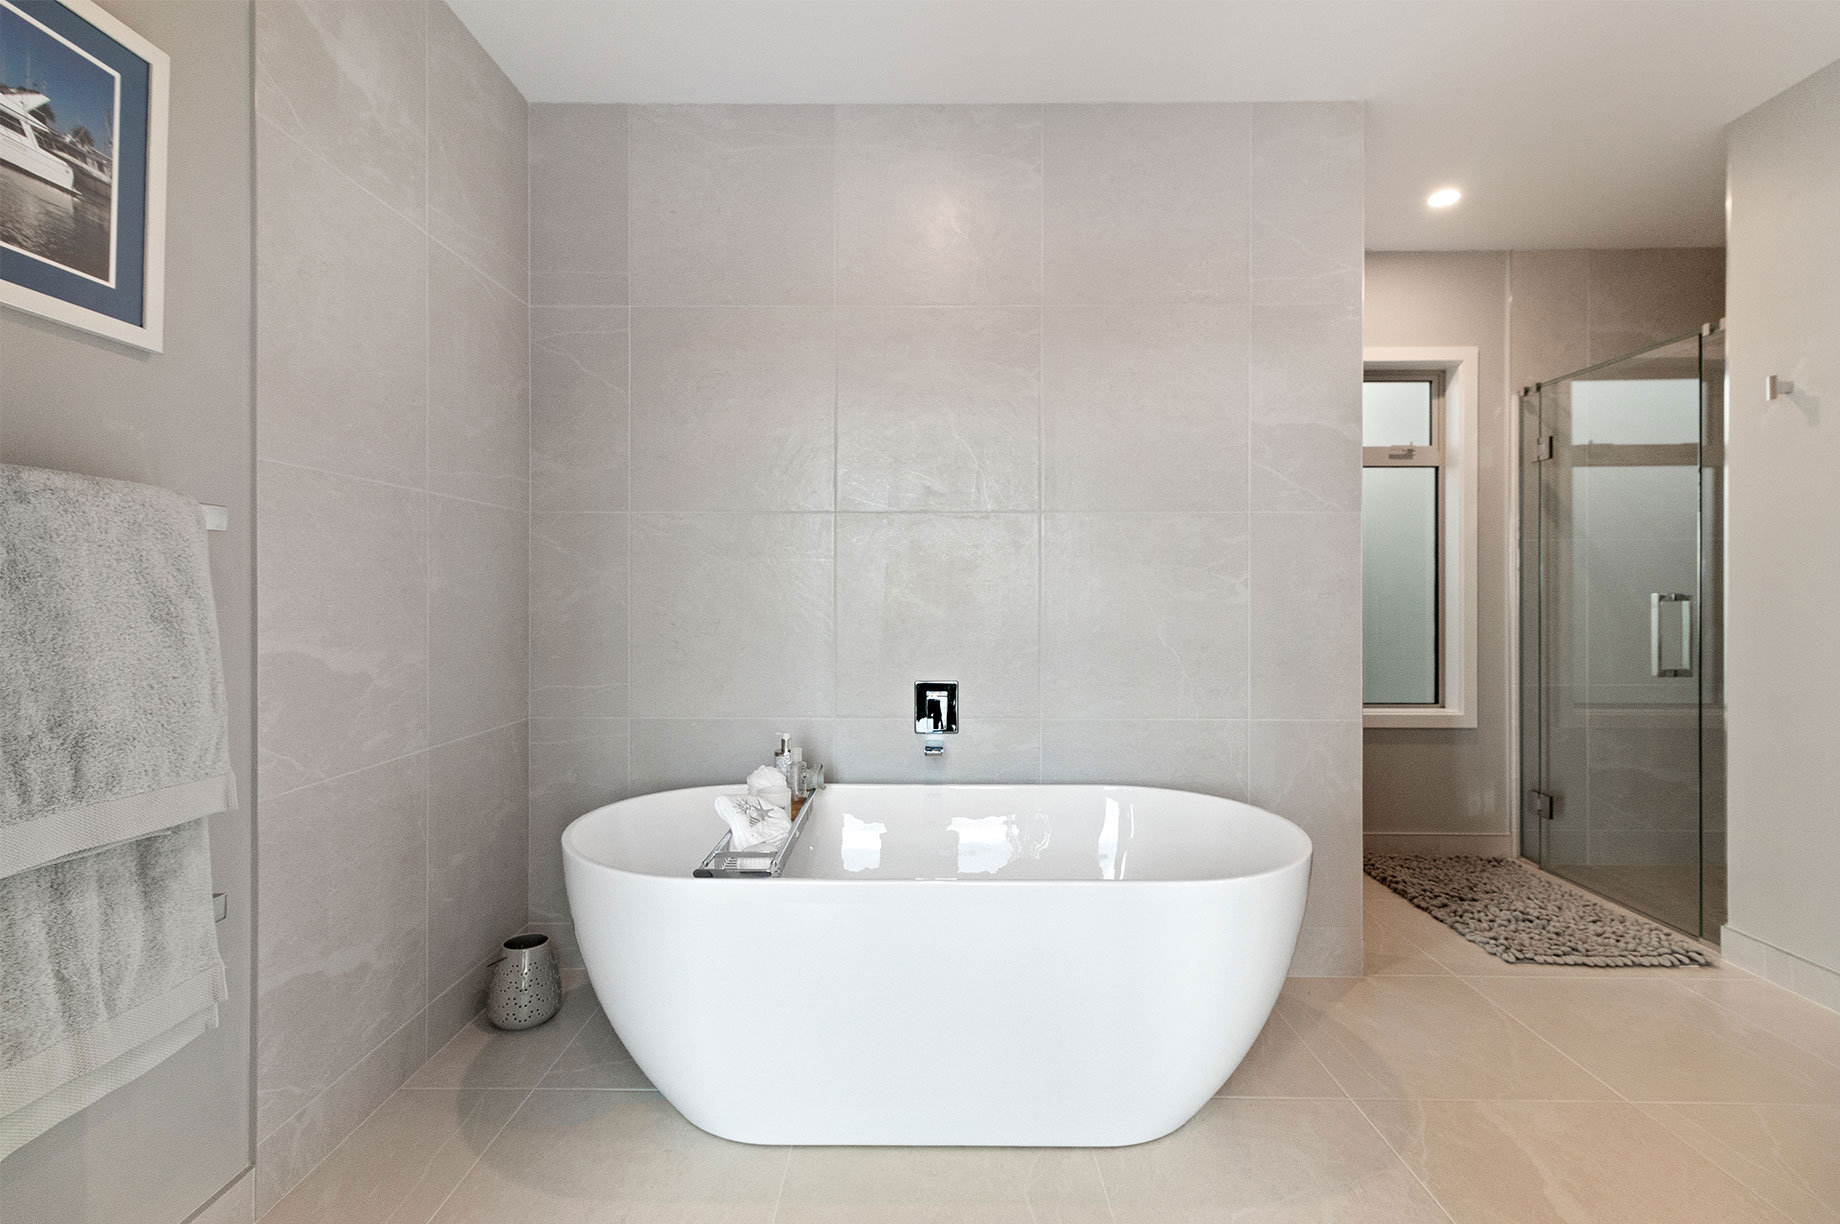 Bath in marble tile bathroom